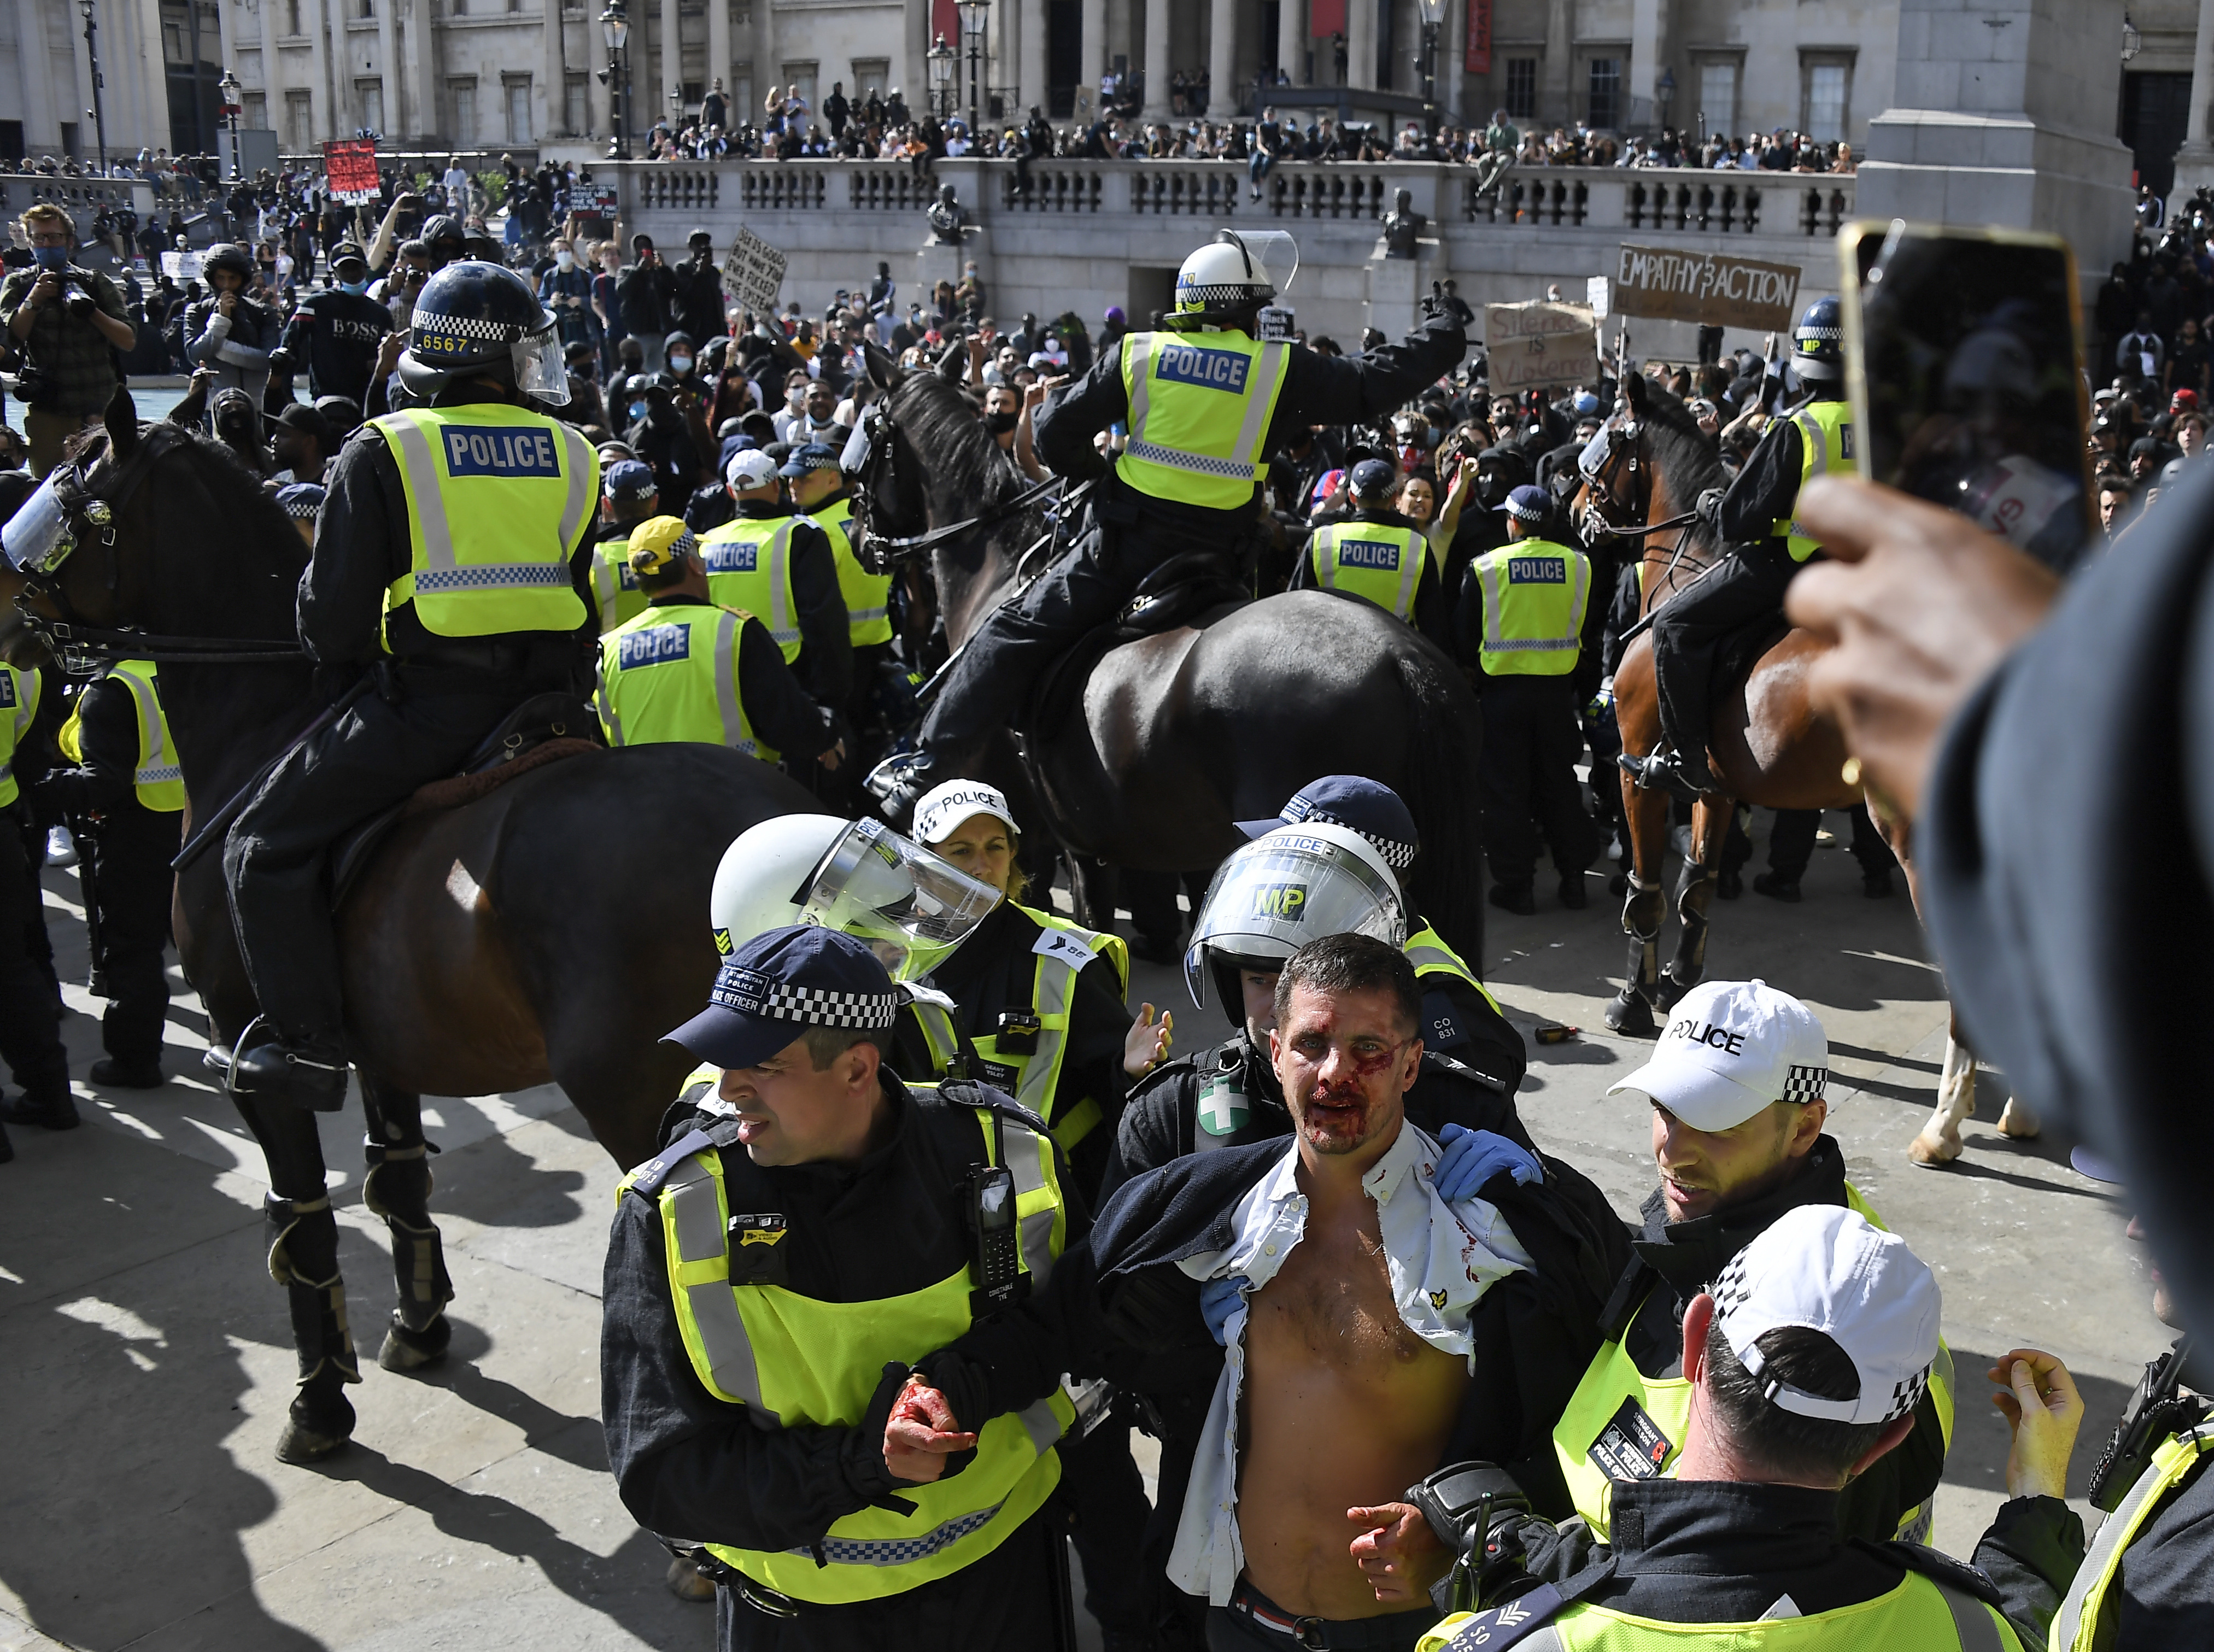 Over 100 arrests after violent clashes at farright linked UK protest